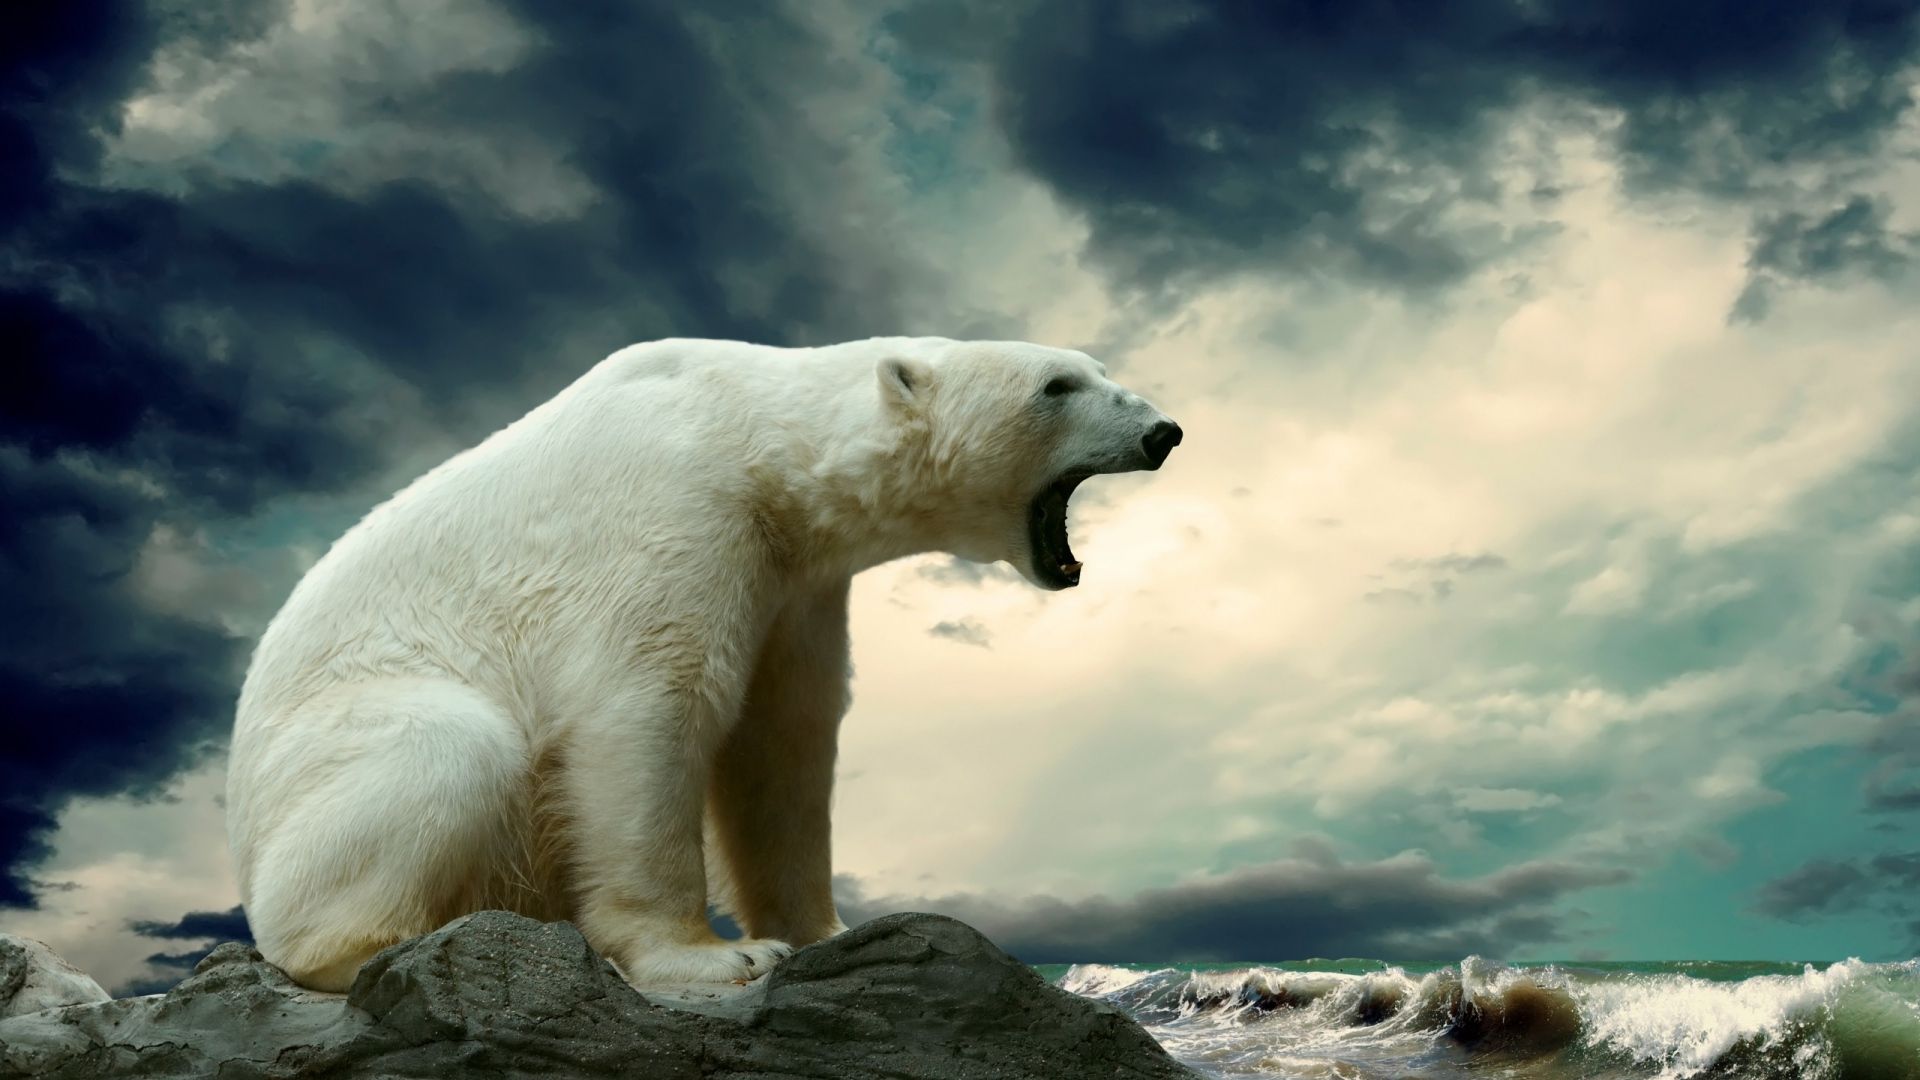 Download Wallpaper 1920x1080 Polar bear, Sitting, Thick Full HD ...